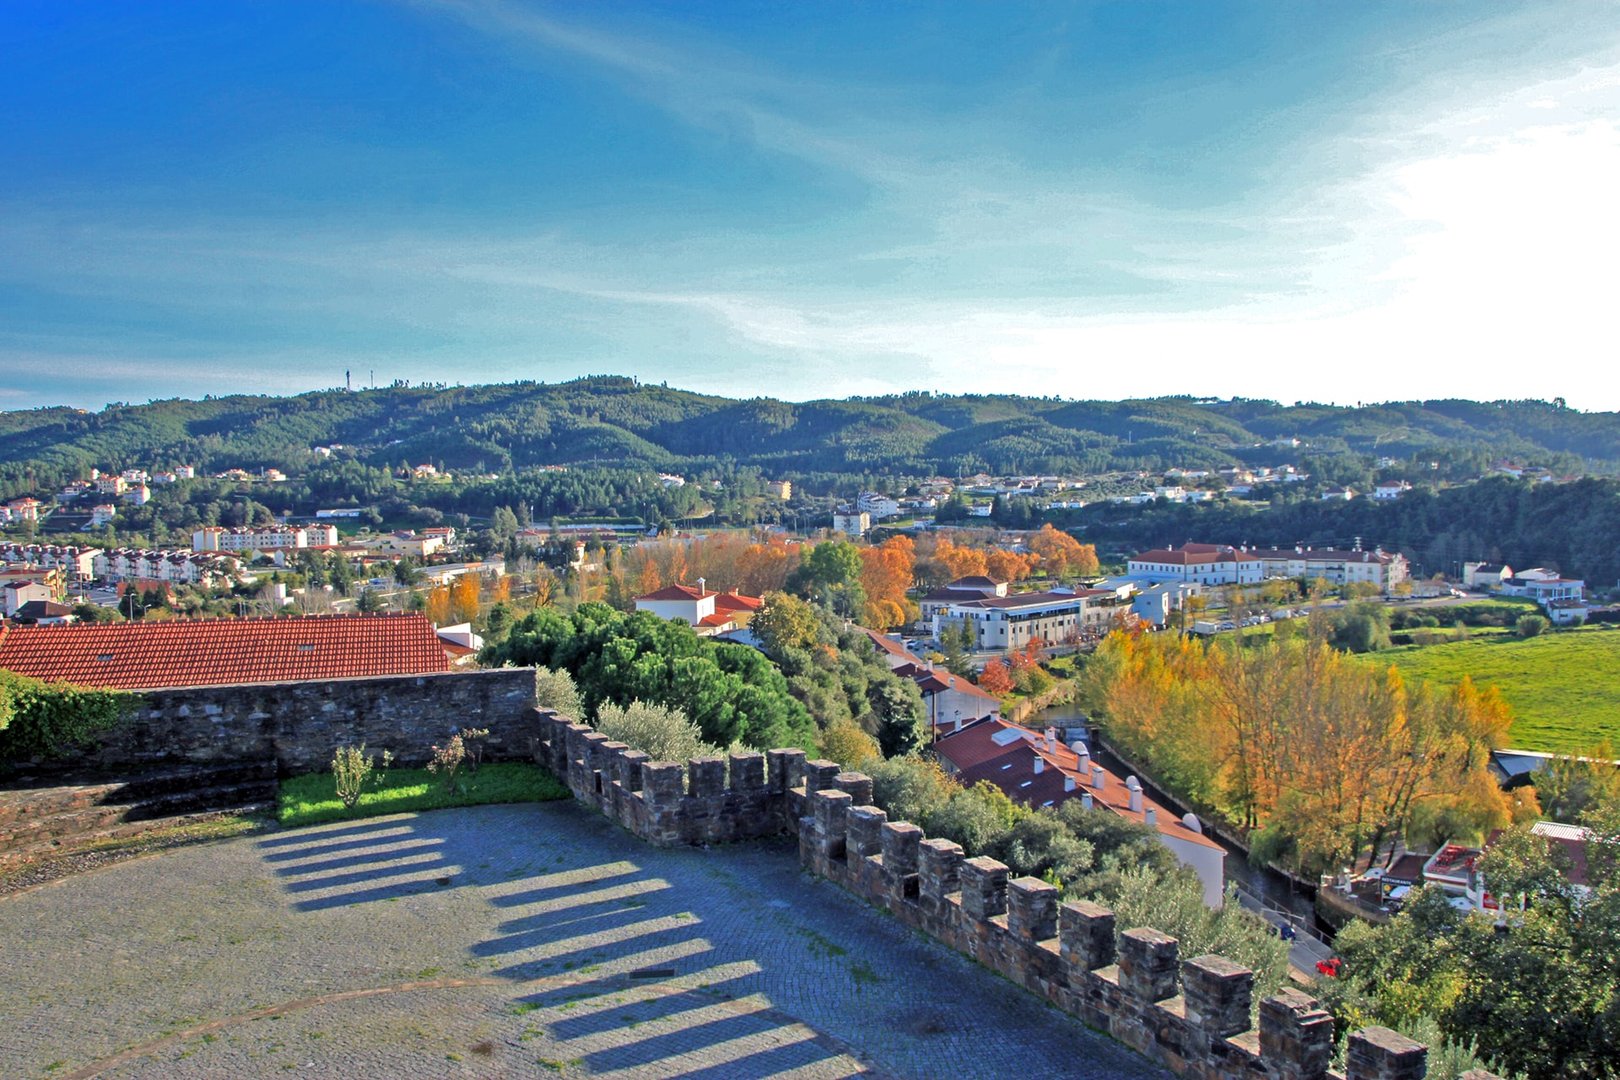 Vista sul da vila da Sertã, a partir da torre (Castelo da Sertã)